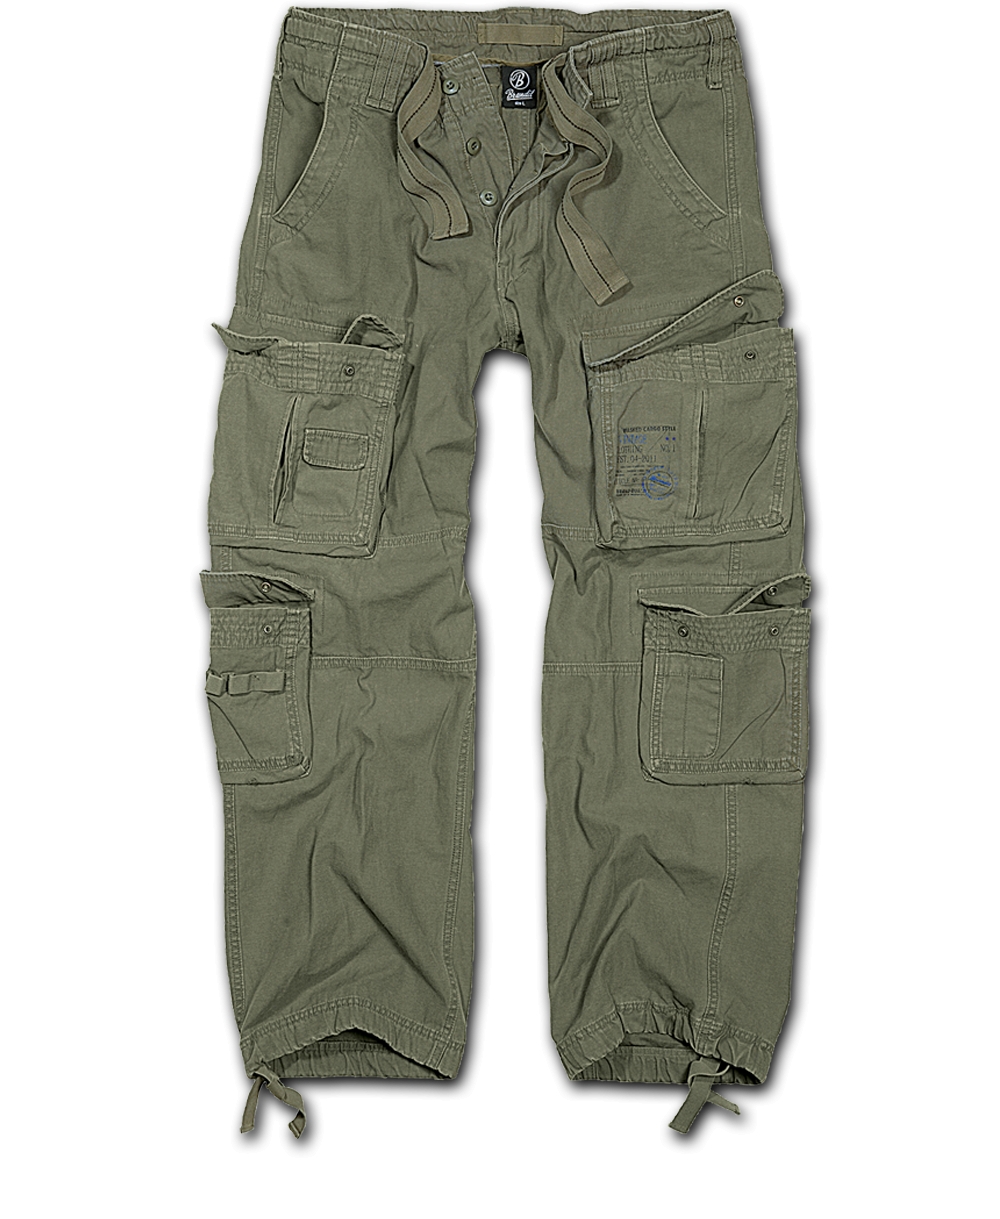 Kalhoty Brandit Pure Vintage - olivové, 6XL